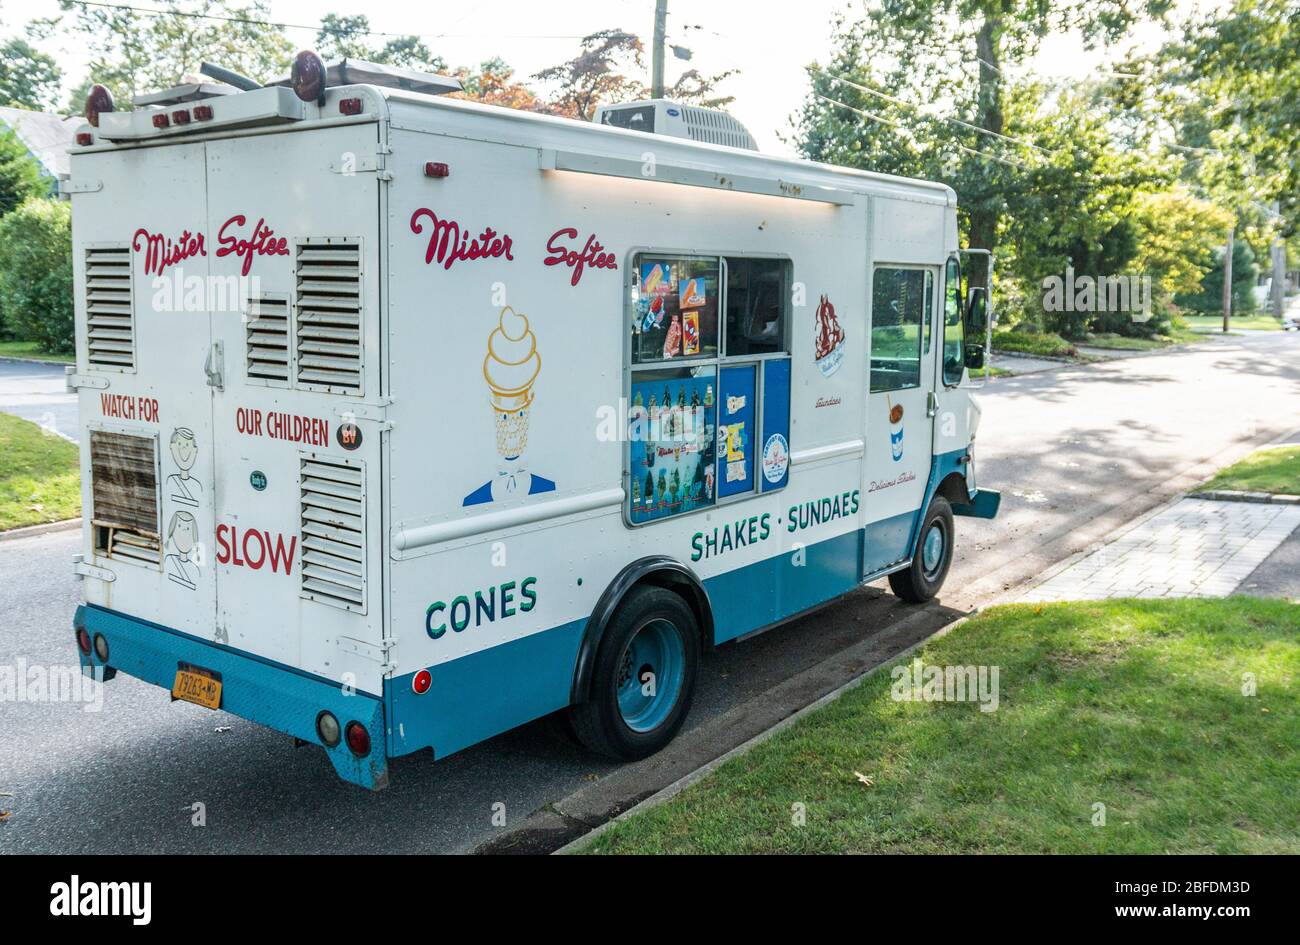 Babylon, New York, USA - 30. September 2018: Ein LKW von Mister Softee fährt eine Straße in einem Wohnviertel entlang und verkauft Eis und Shakes. Stockfoto